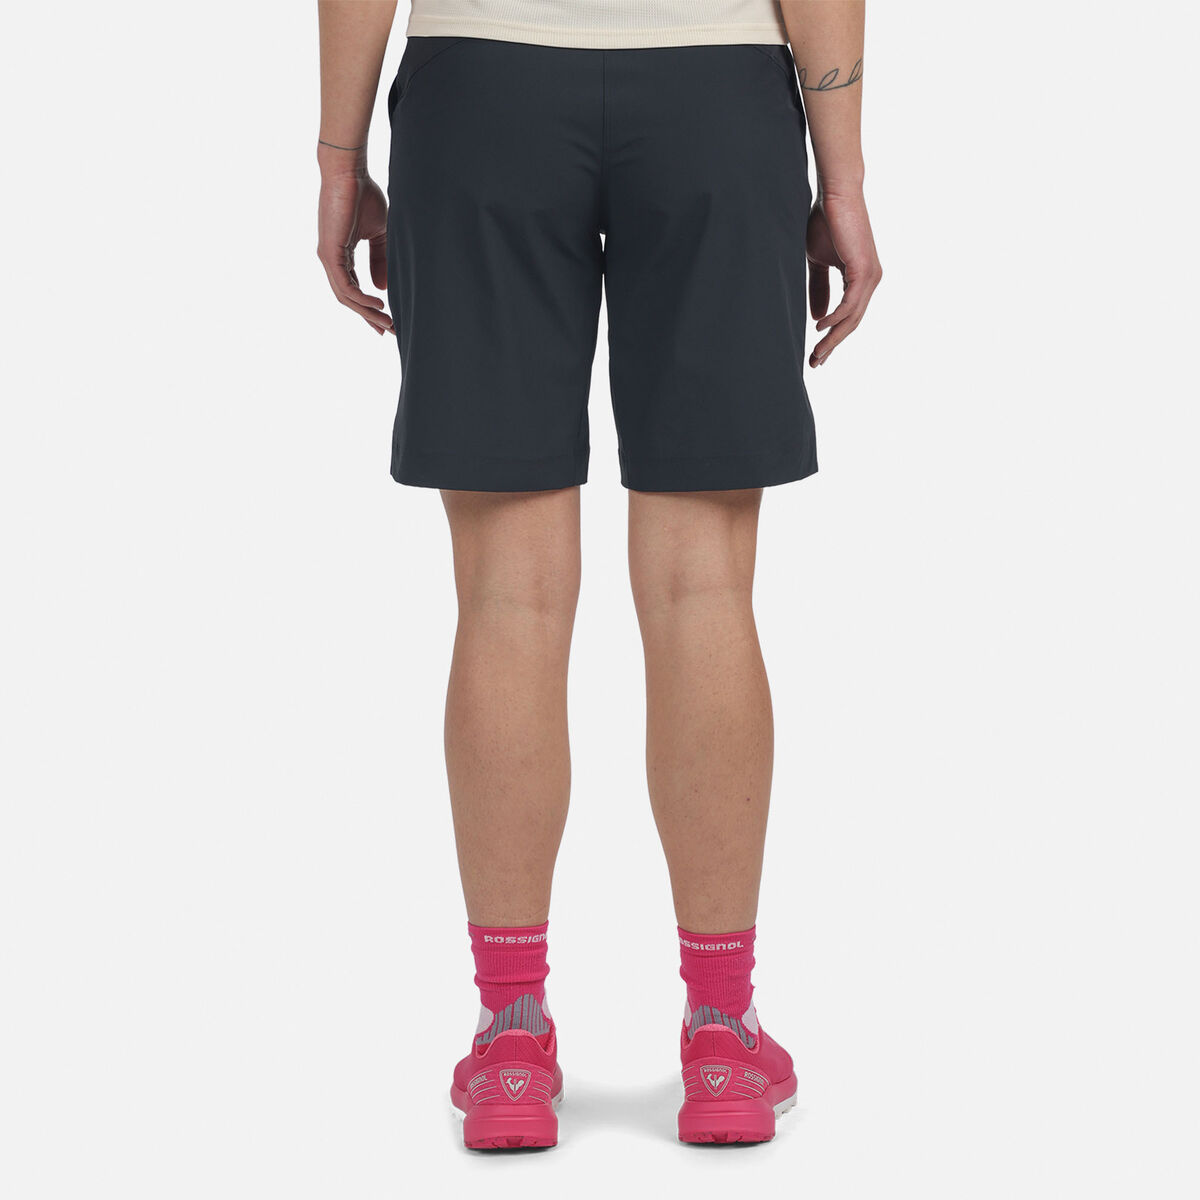 Women's SKPR Shorts